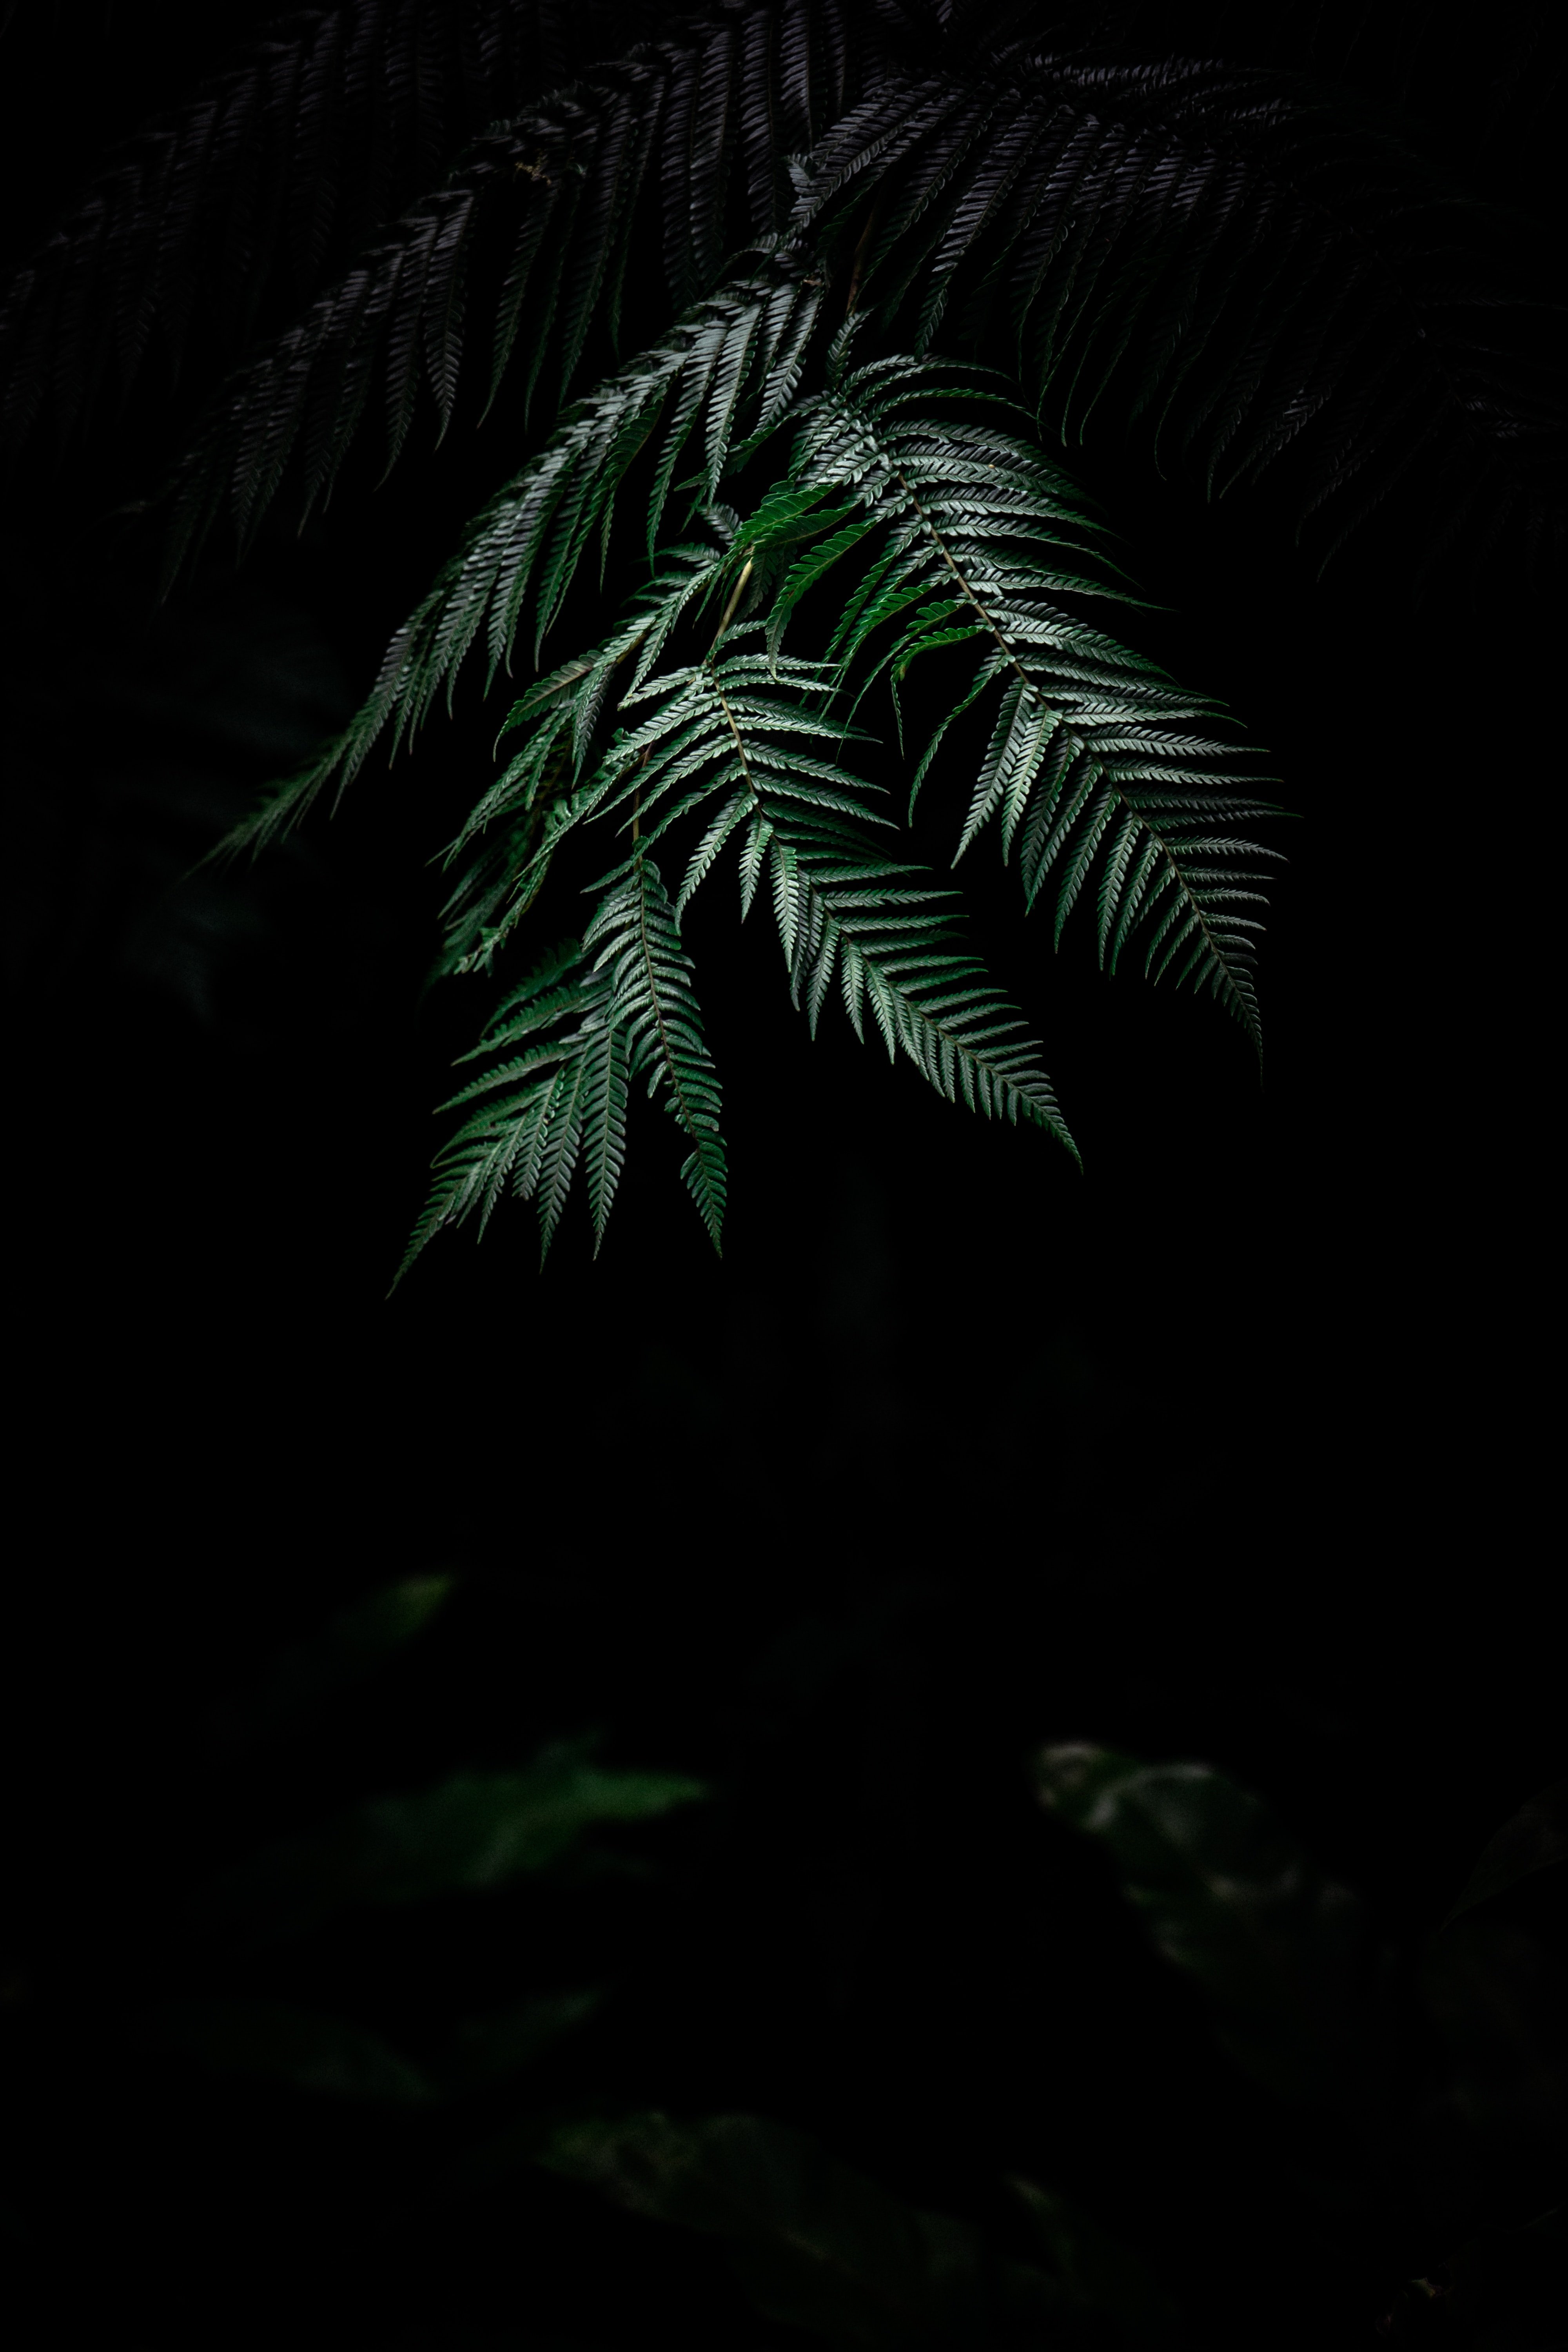 Картинка на телефон вертикальная темная. Тропические листья на темном фоне. Тропические растения на черном фоне. Темный фон с пальмовыми листьями. Папоротник темный.